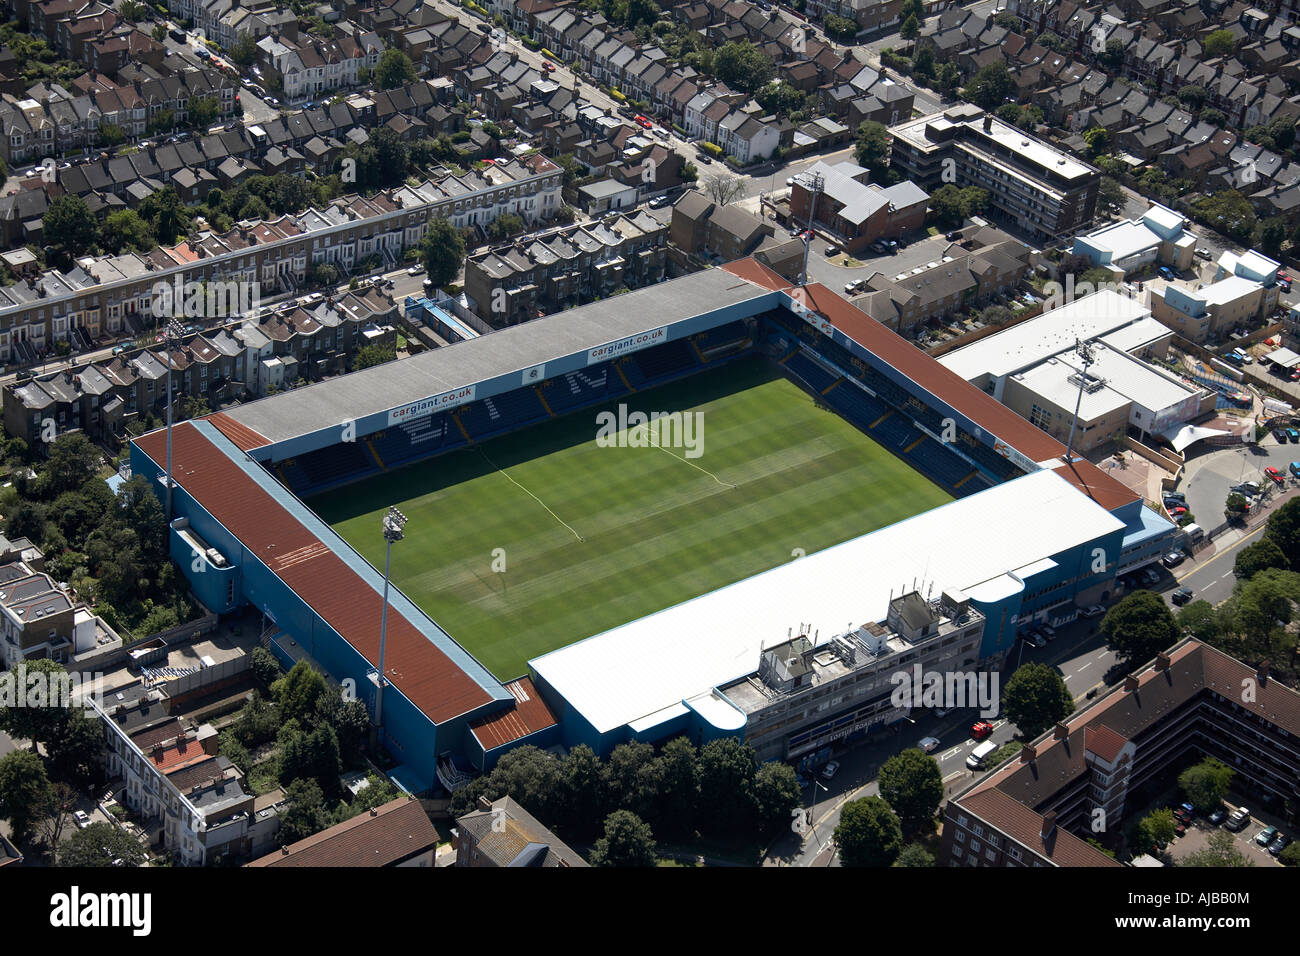 Vue aérienne au sud-ouest de Queens Park Rangers F C football stadium Londres W12 England UK oblique de haut niveau Banque D'Images